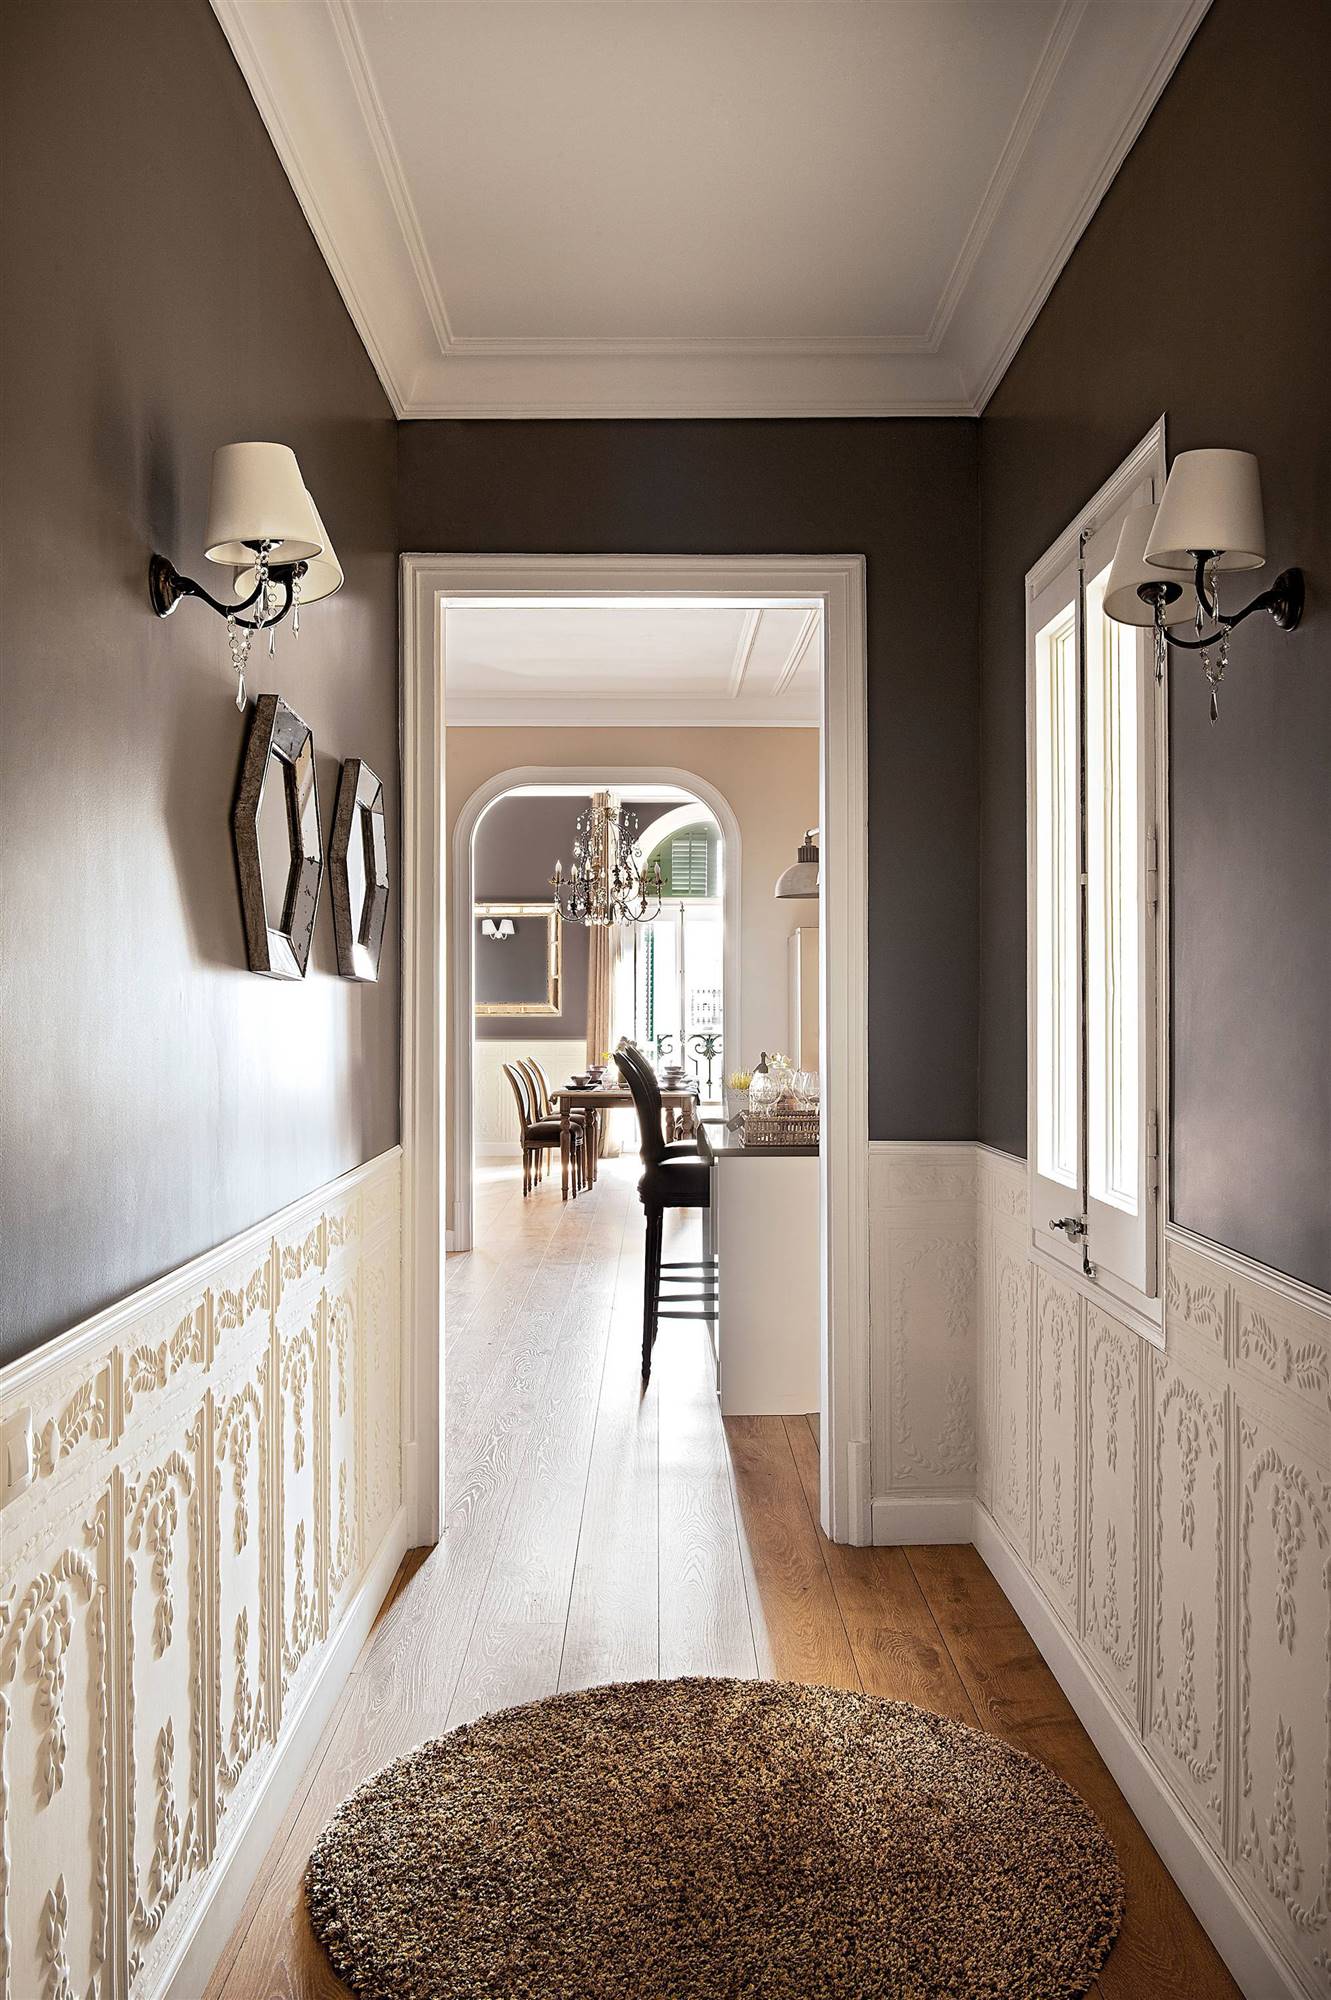 Pasillo con apliques de pared clásicos y arrimadero con molduras decorativas.